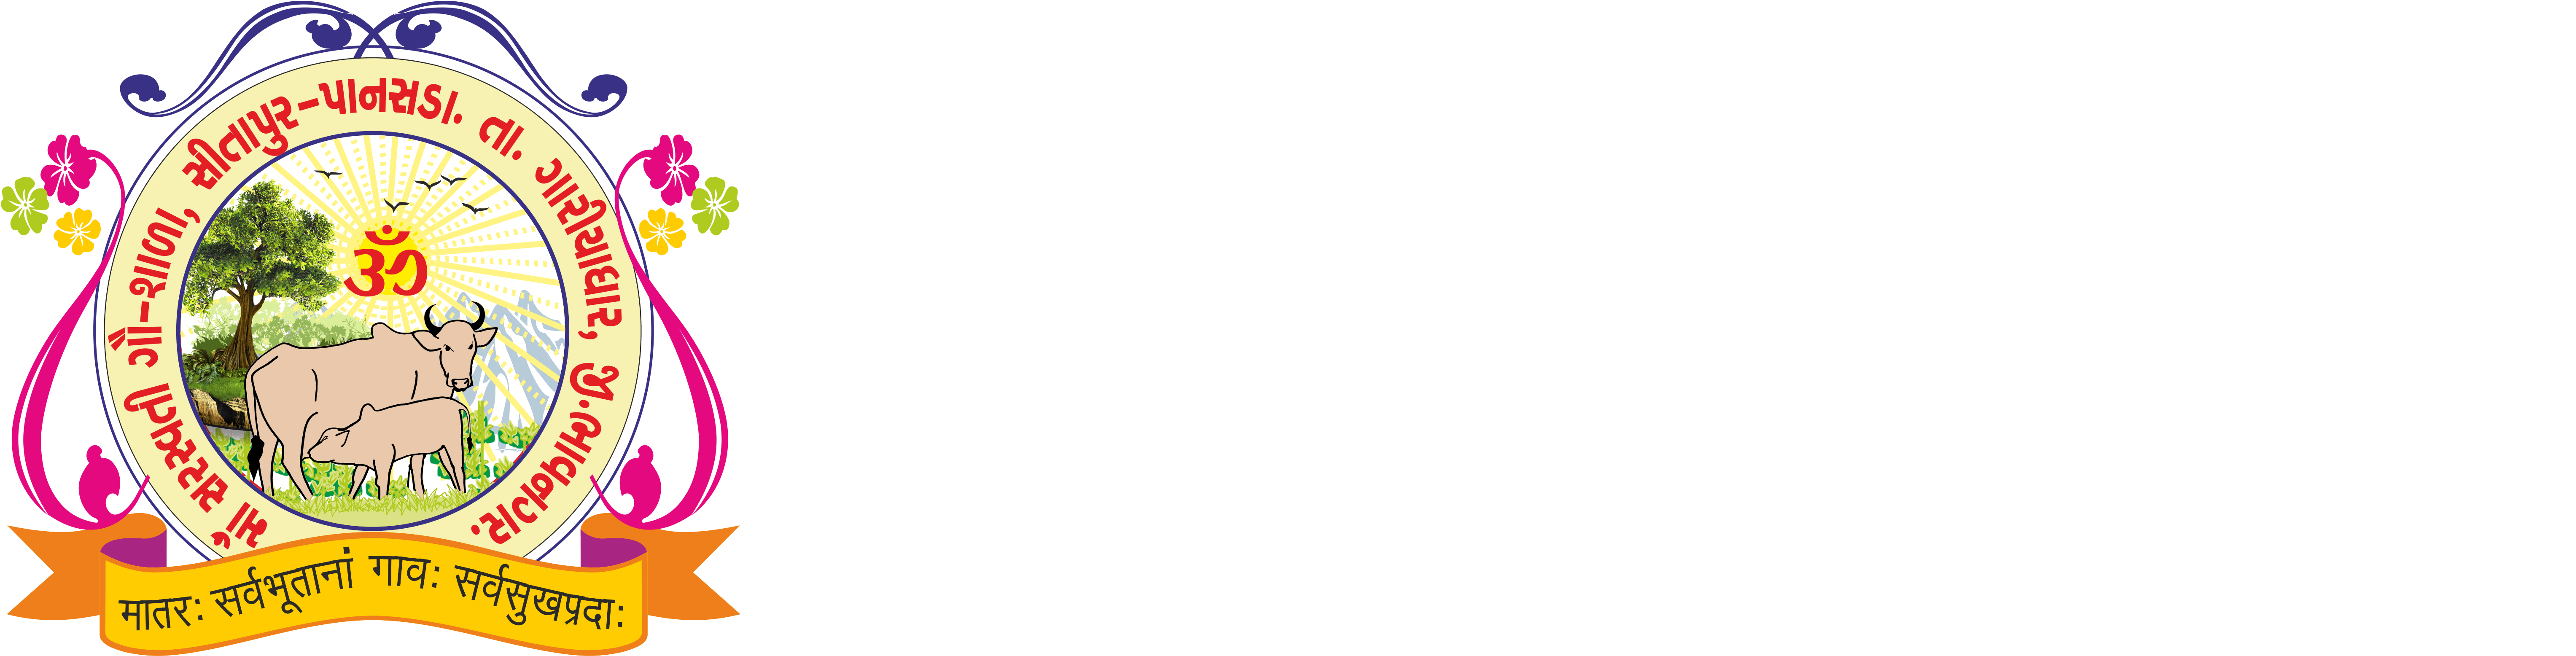 Maa Saraswati Vandana Logo PNG